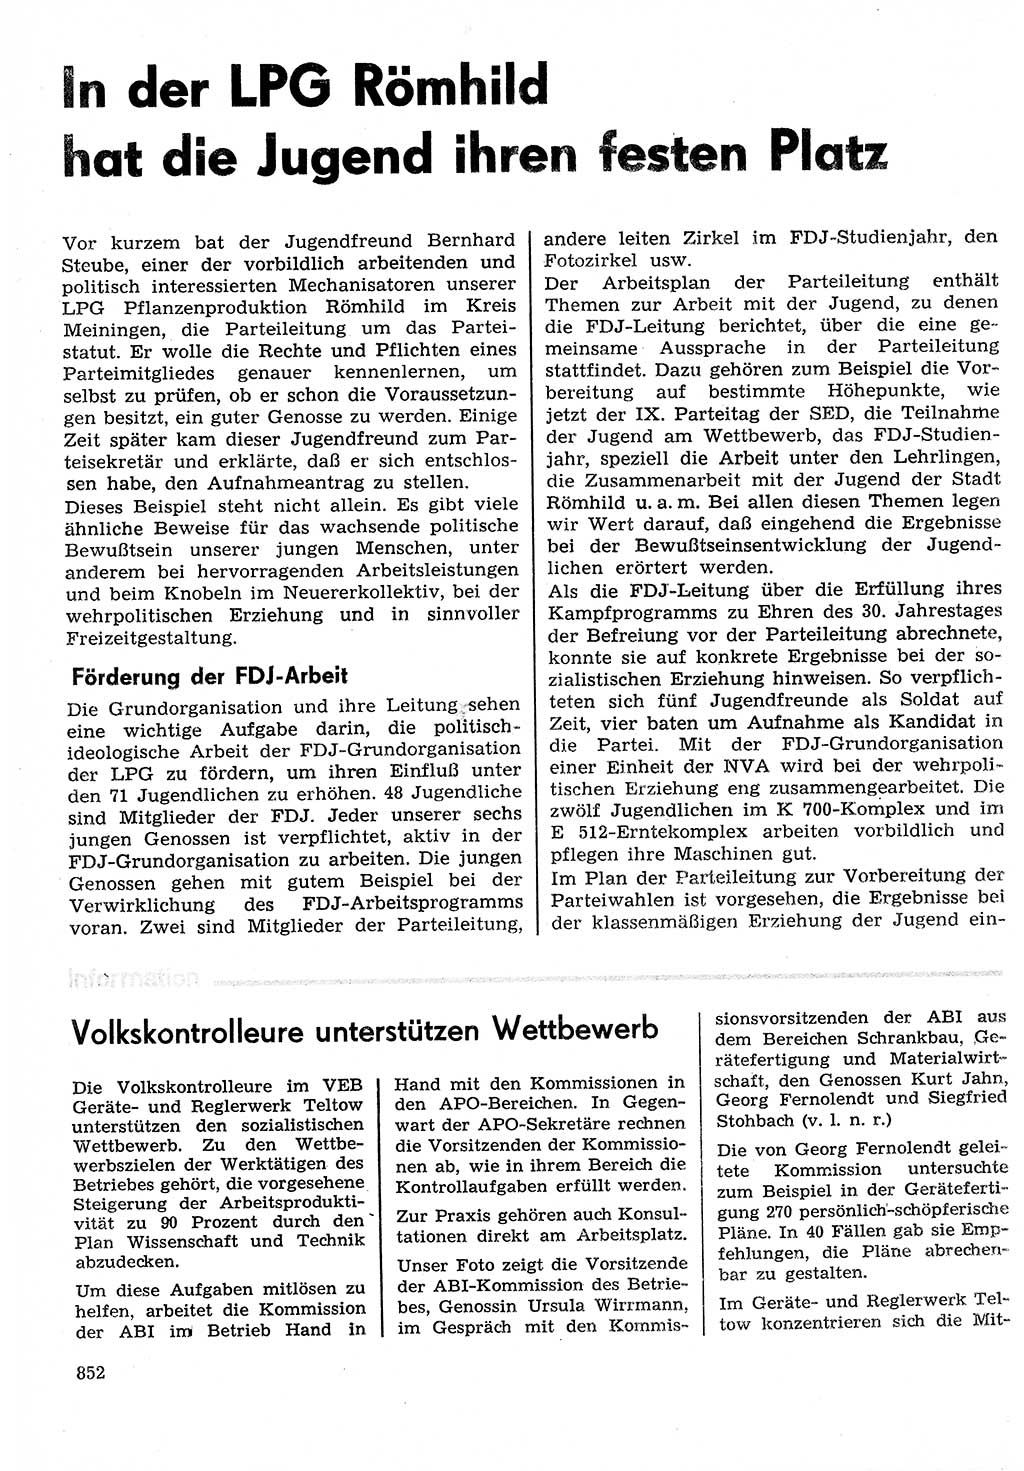 Neuer Weg (NW), Organ des Zentralkomitees (ZK) der SED (Sozialistische Einheitspartei Deutschlands) für Fragen des Parteilebens, 30. Jahrgang [Deutsche Demokratische Republik (DDR)] 1975, Seite 852 (NW ZK SED DDR 1975, S. 852)